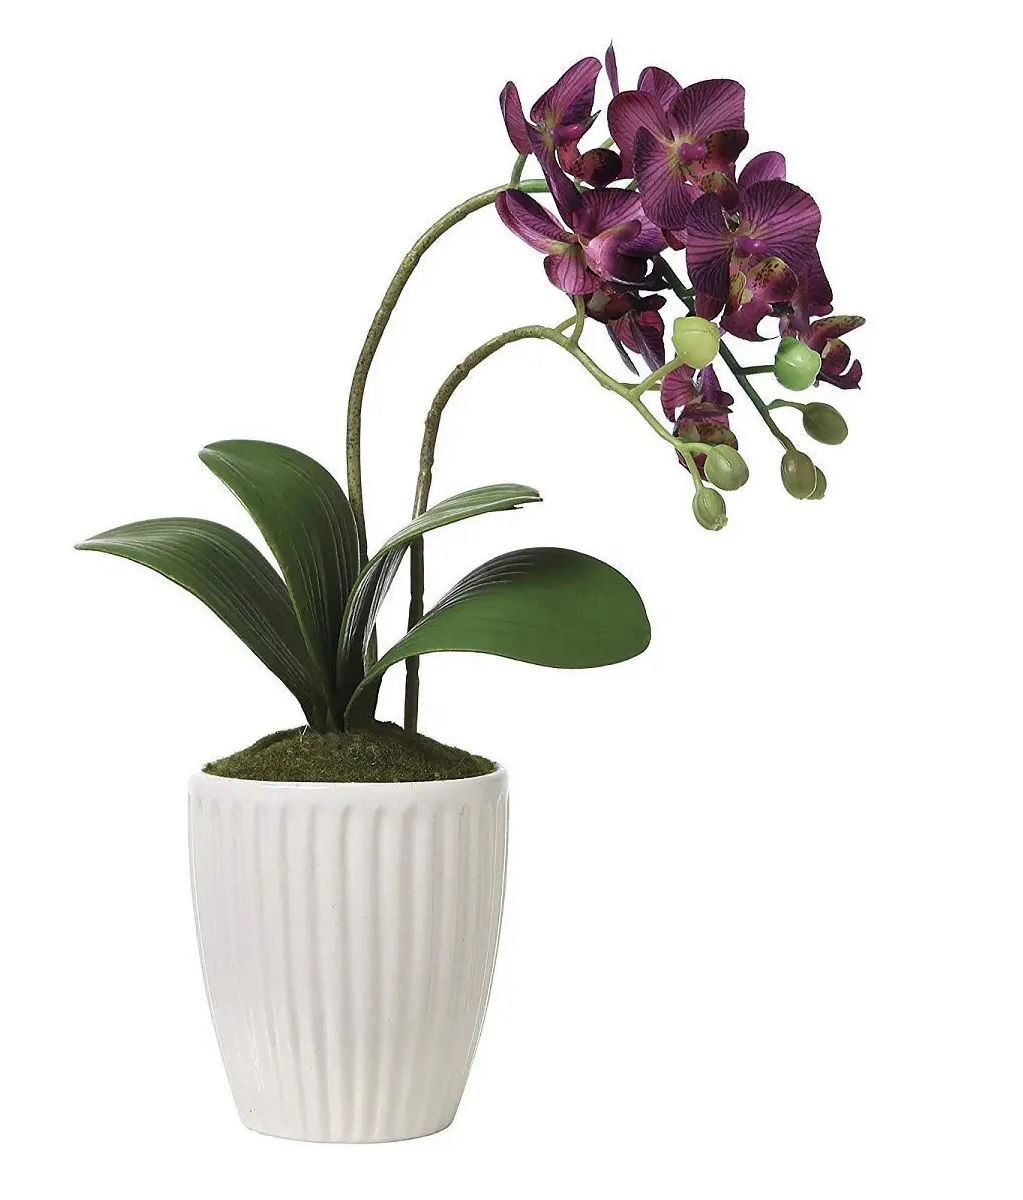 Орхидея купить нижний новгород в горшке. Орхидея в горшке. Искусственная Орхидея в горшке. Горшки для орхидей прозрачные. Кашпо для цветов орхидей.